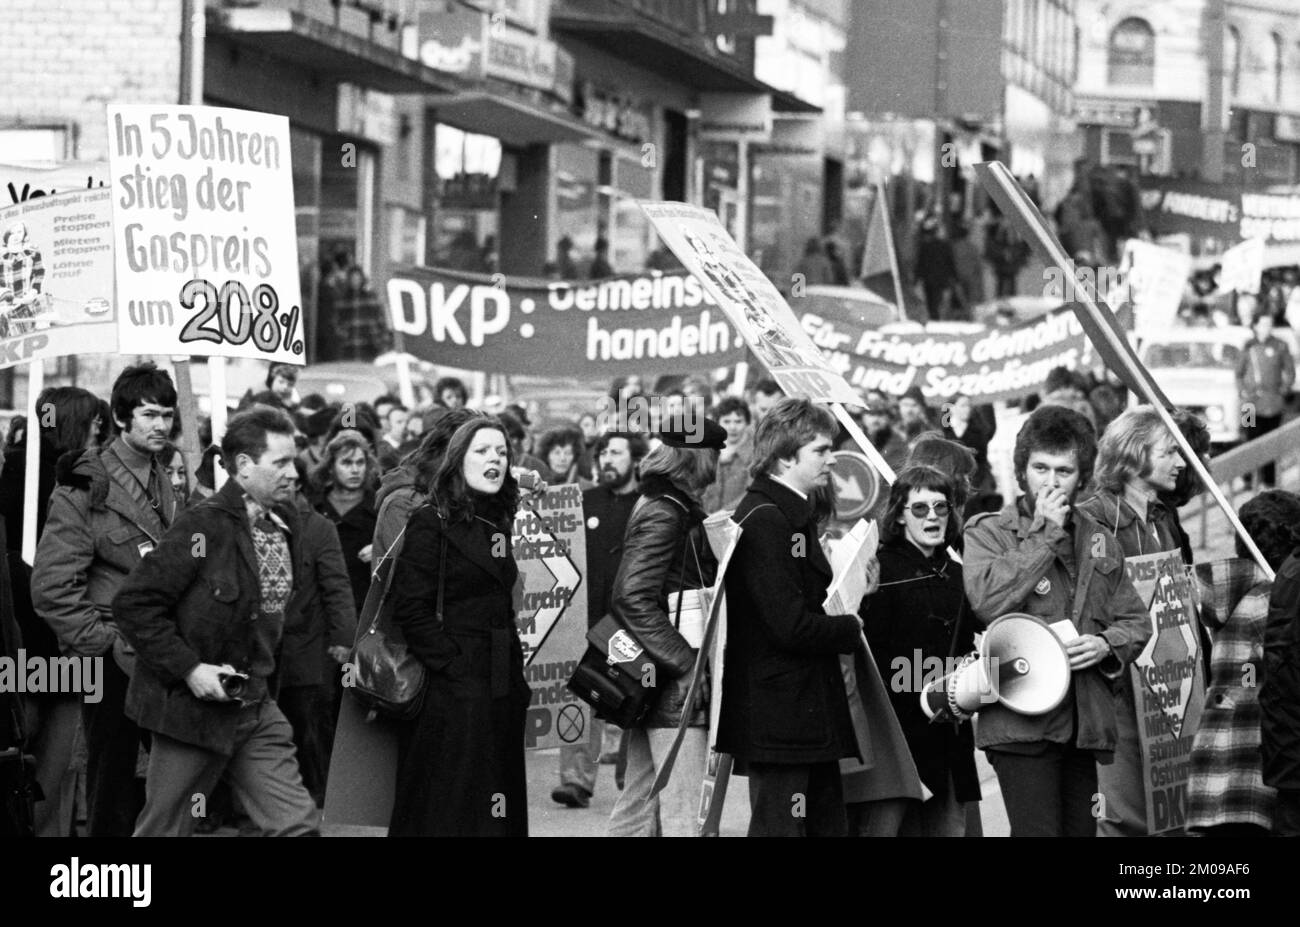 DKP-Unterstützer und -Funktionäre demonstrierten für ein Einfrieren der Preise für gemeinnützige und allgemeine Preise auf 18.01.1975 in Solingen, Deutschland, Europa Stockfoto